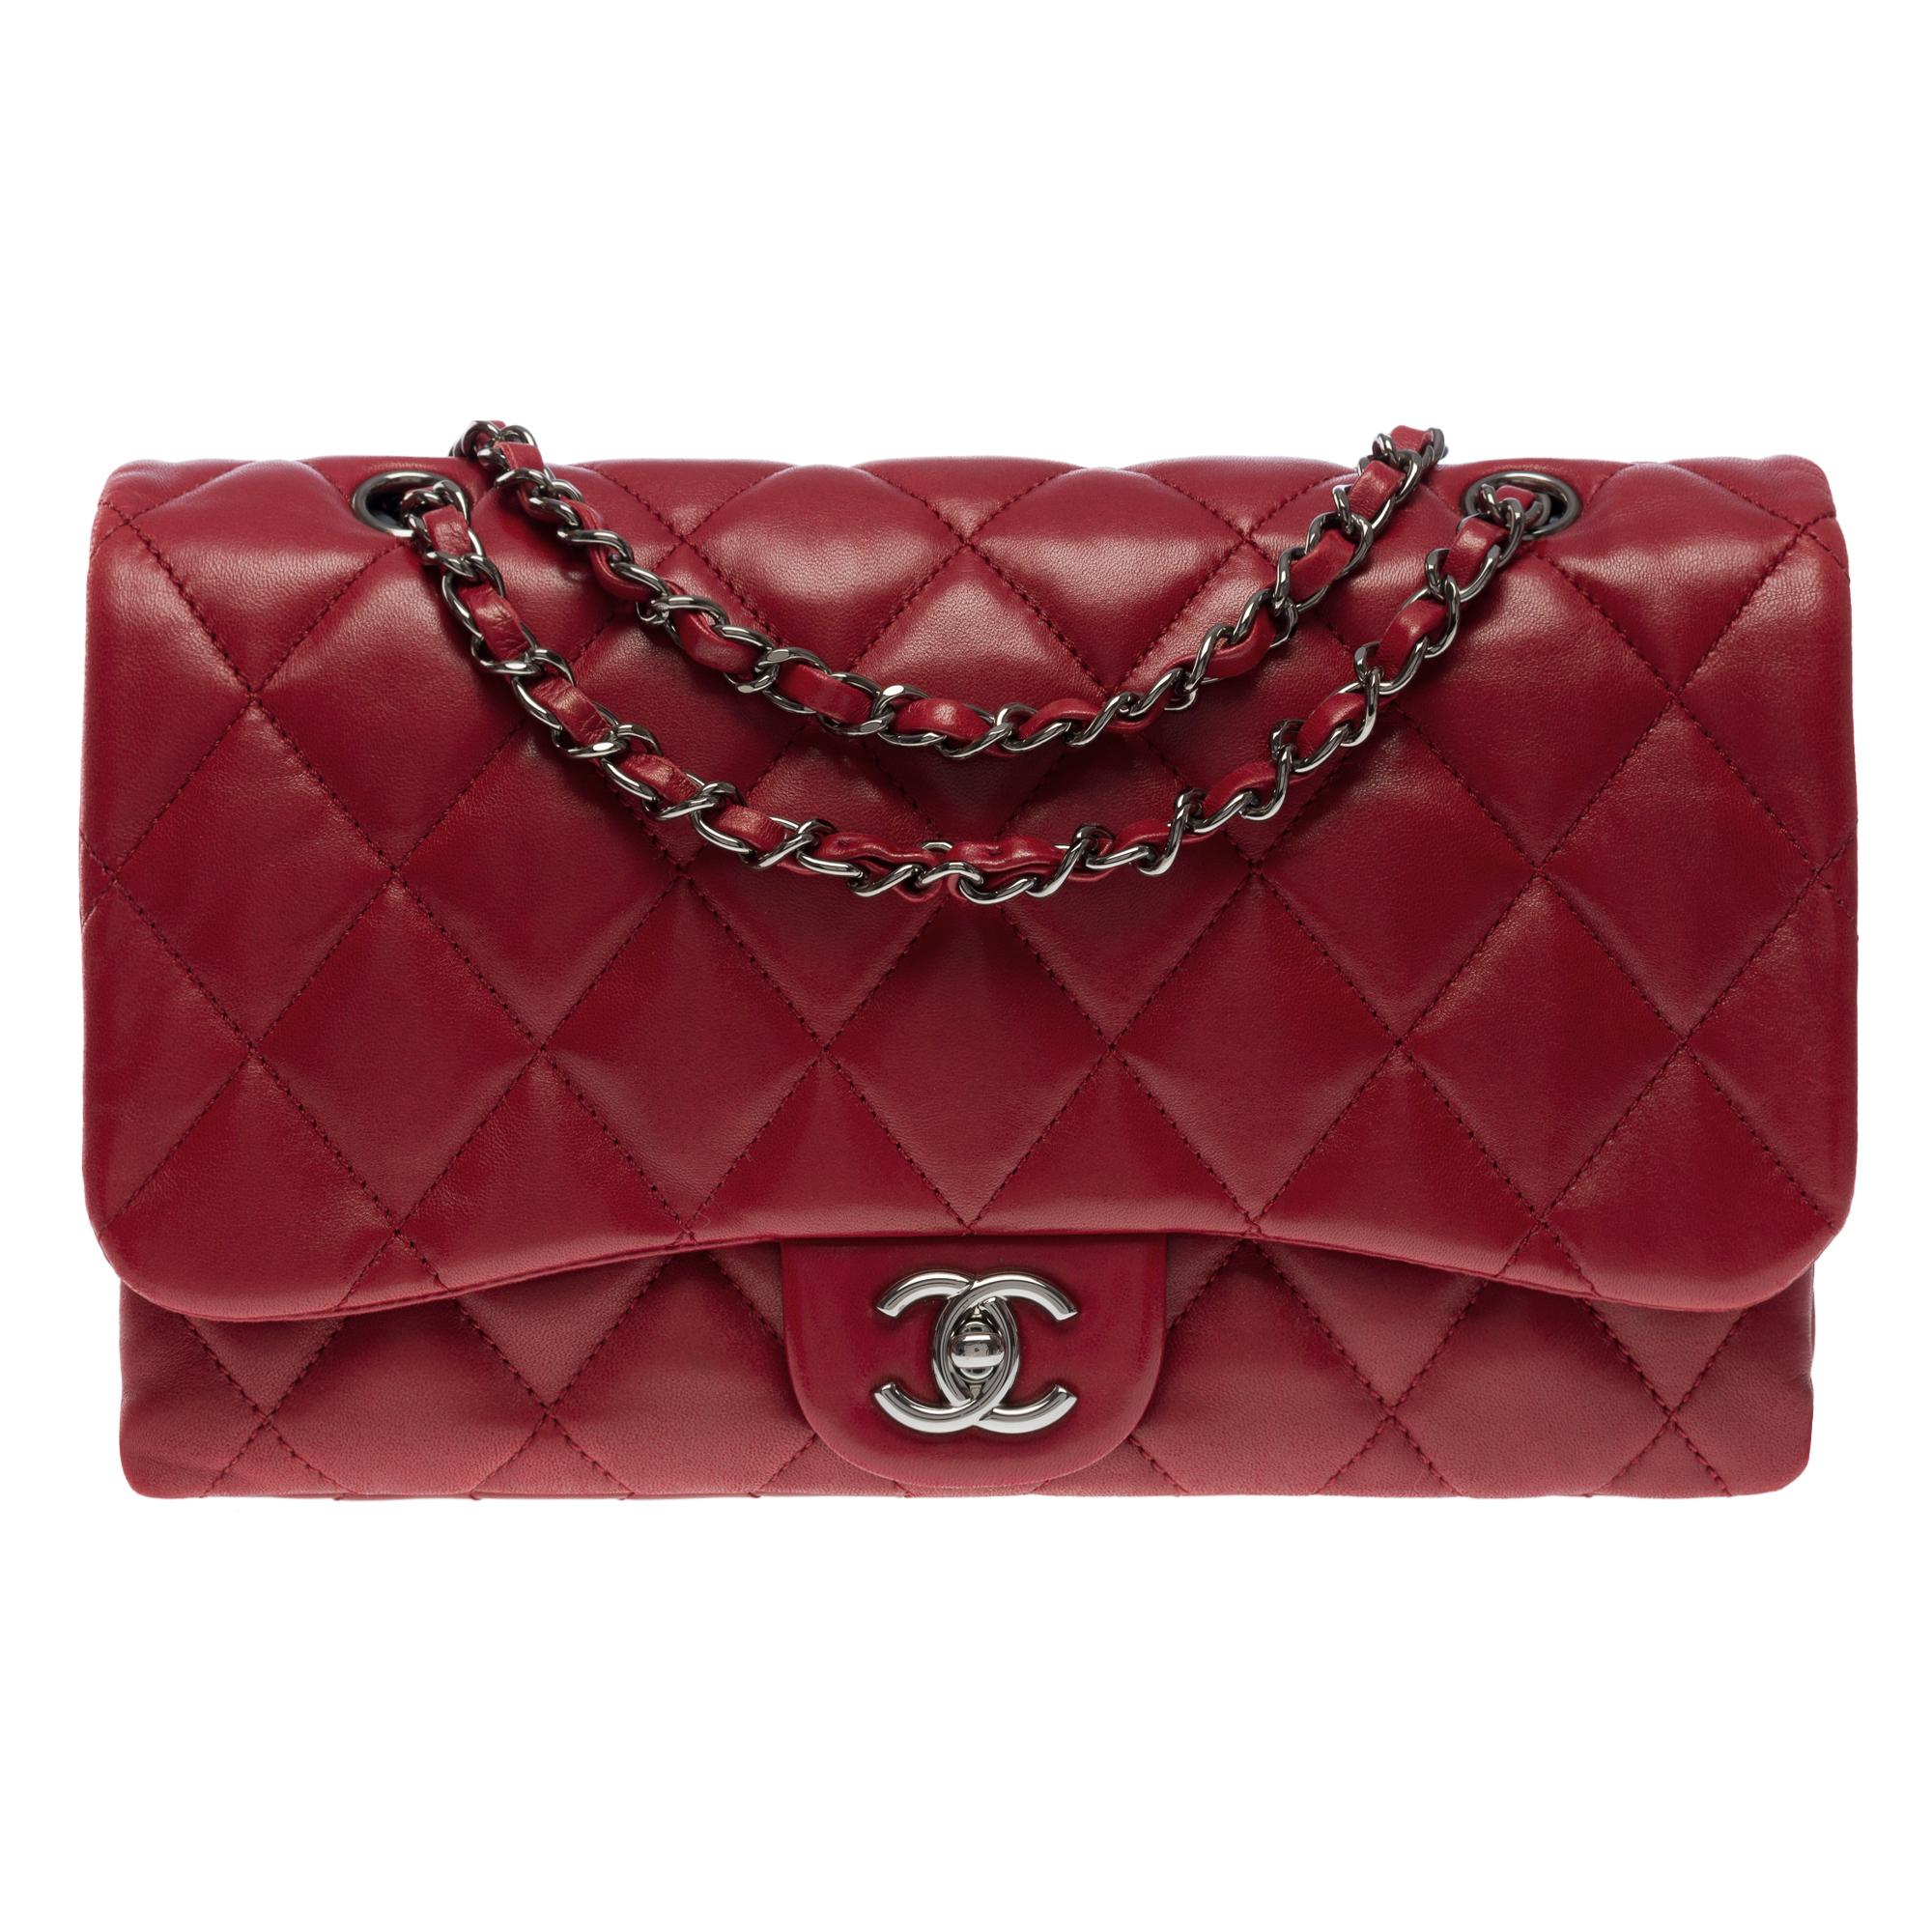 Magnifique sac à bandoulière Chanel Classic avec soufflet en cuir d'agneau matelassé rouge grenat, quincaillerie en métal argenté, une anse en chaîne en métal argenté entrelacée de cuir rouge pour un portage à l'épaule ou en bandoulière.

Fermeture